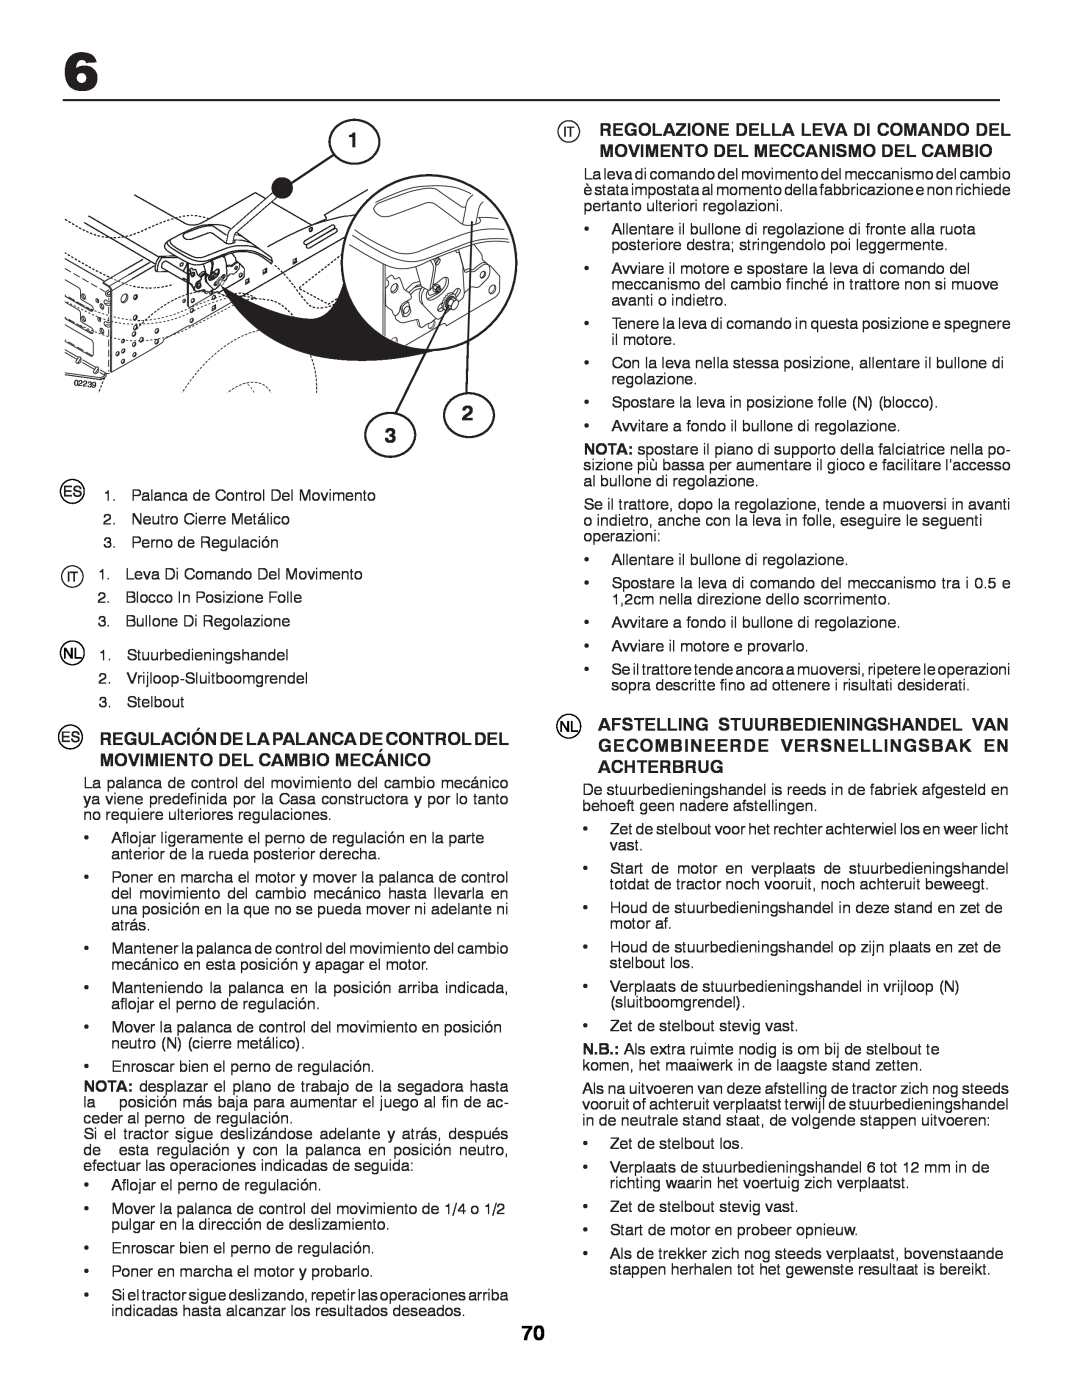 McCulloch M13597H, 96041000901 instruction manual Regulación De La Palanca De Control Del Movimiento Del Cambio Mecánico 